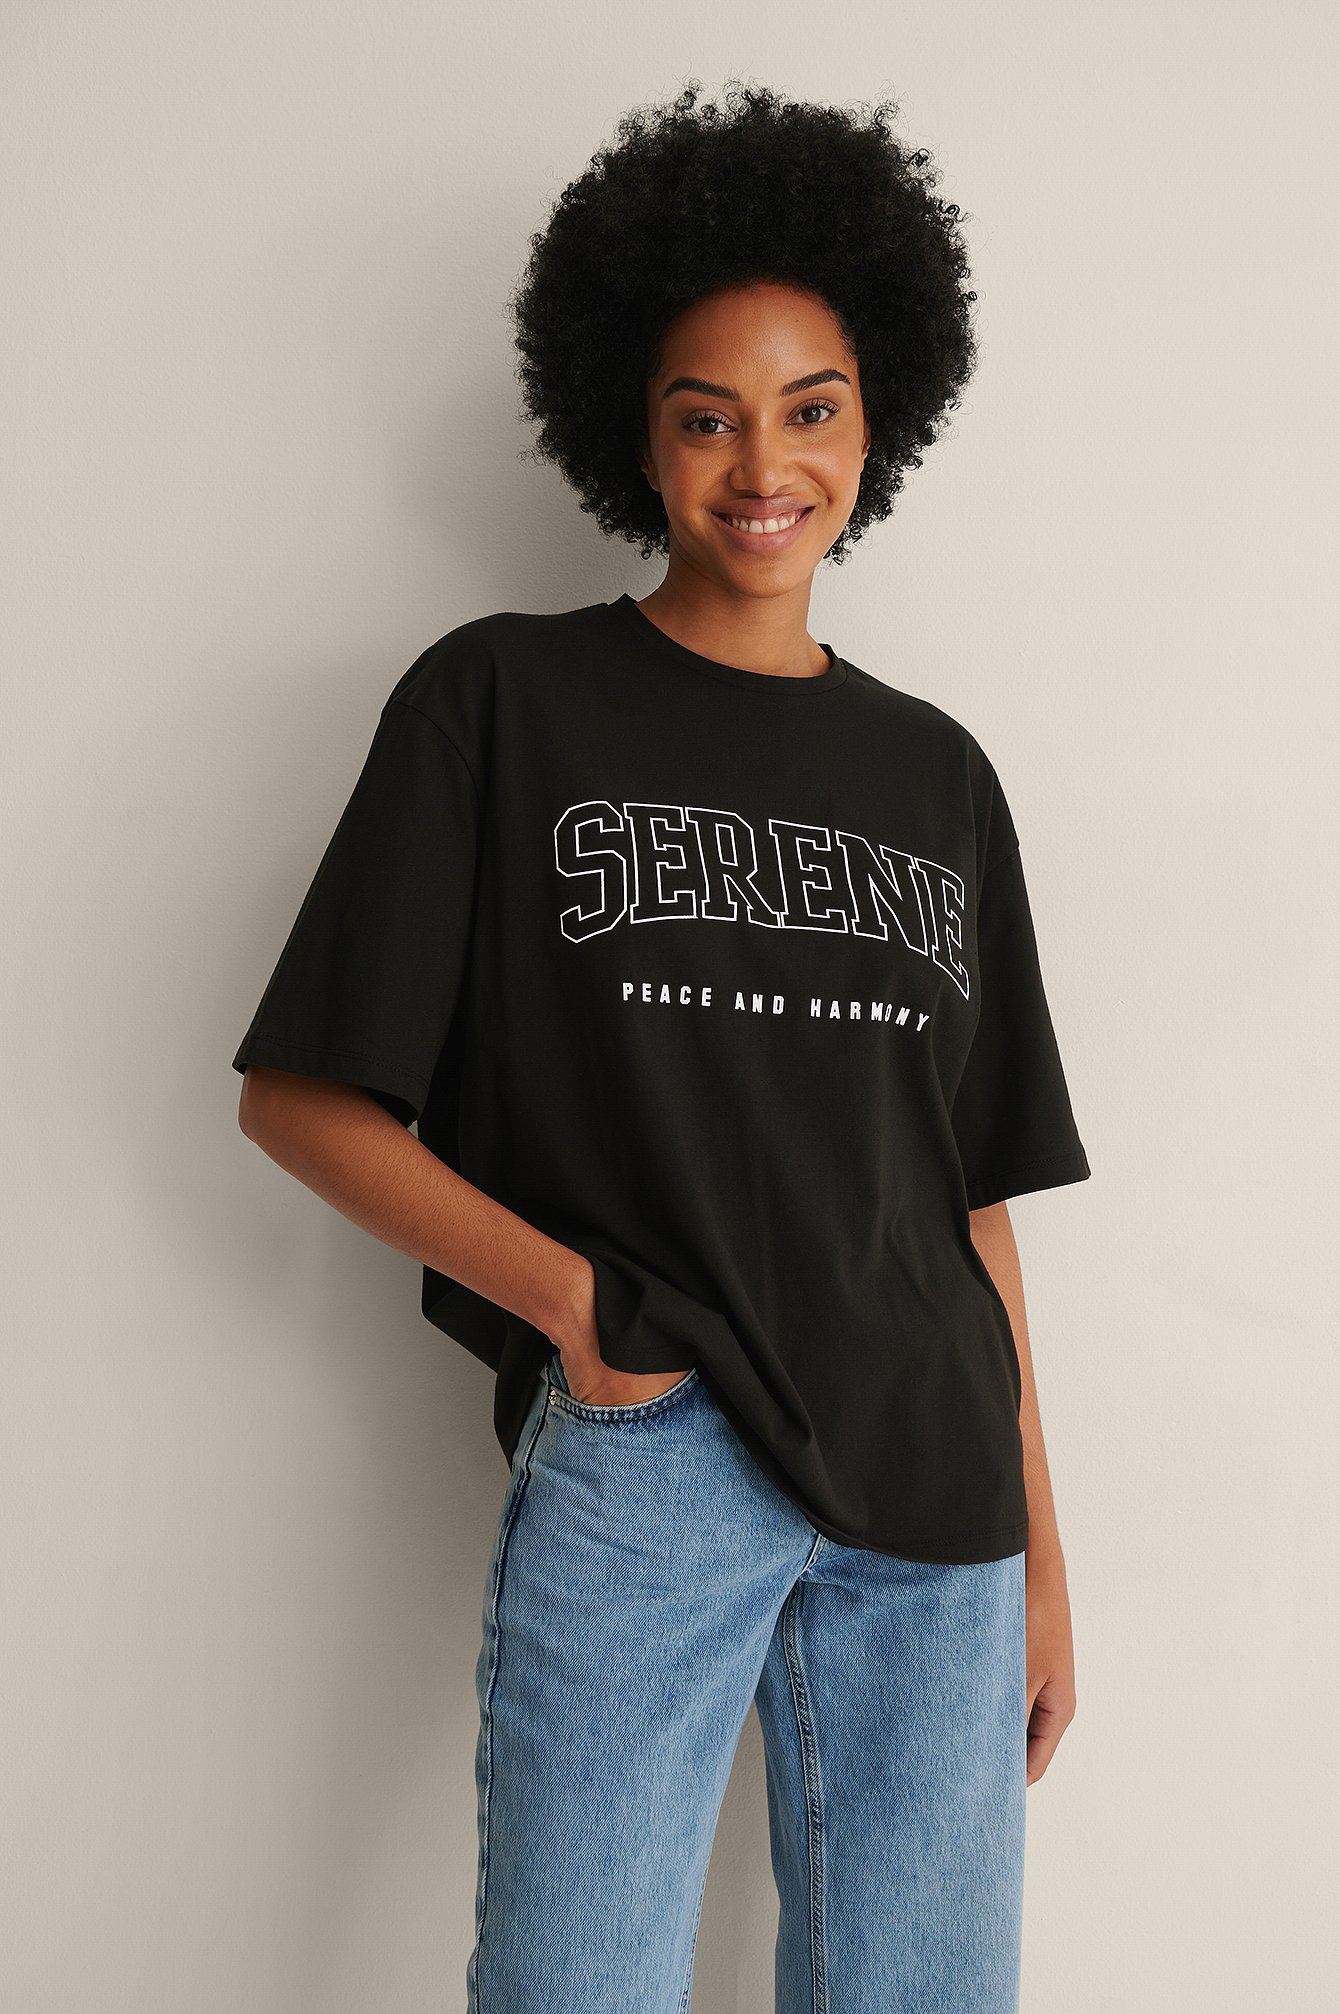 Black T-Shirt mit Serene-Aufdruck